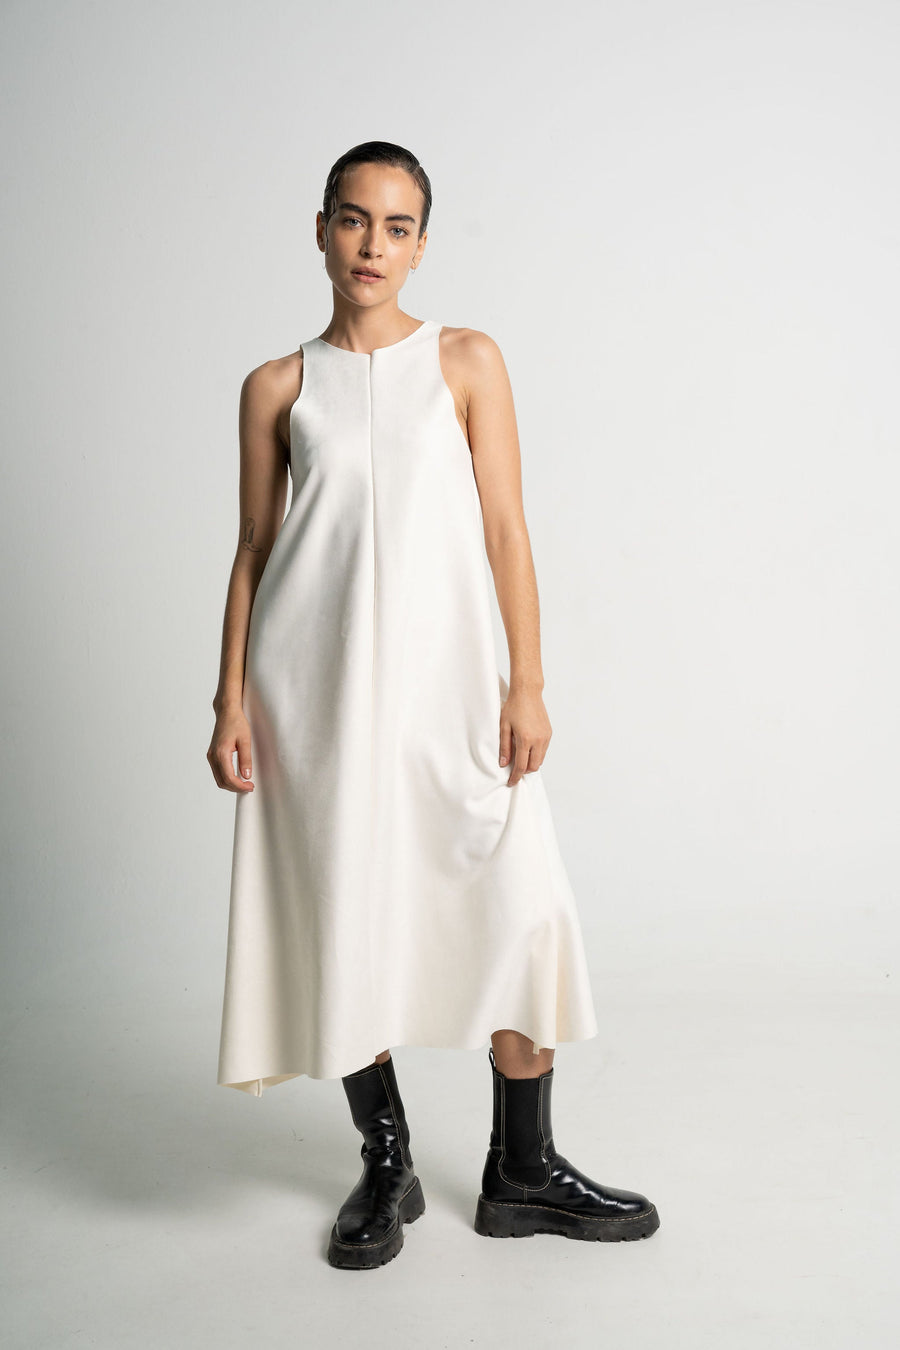 Siena Ivory dress